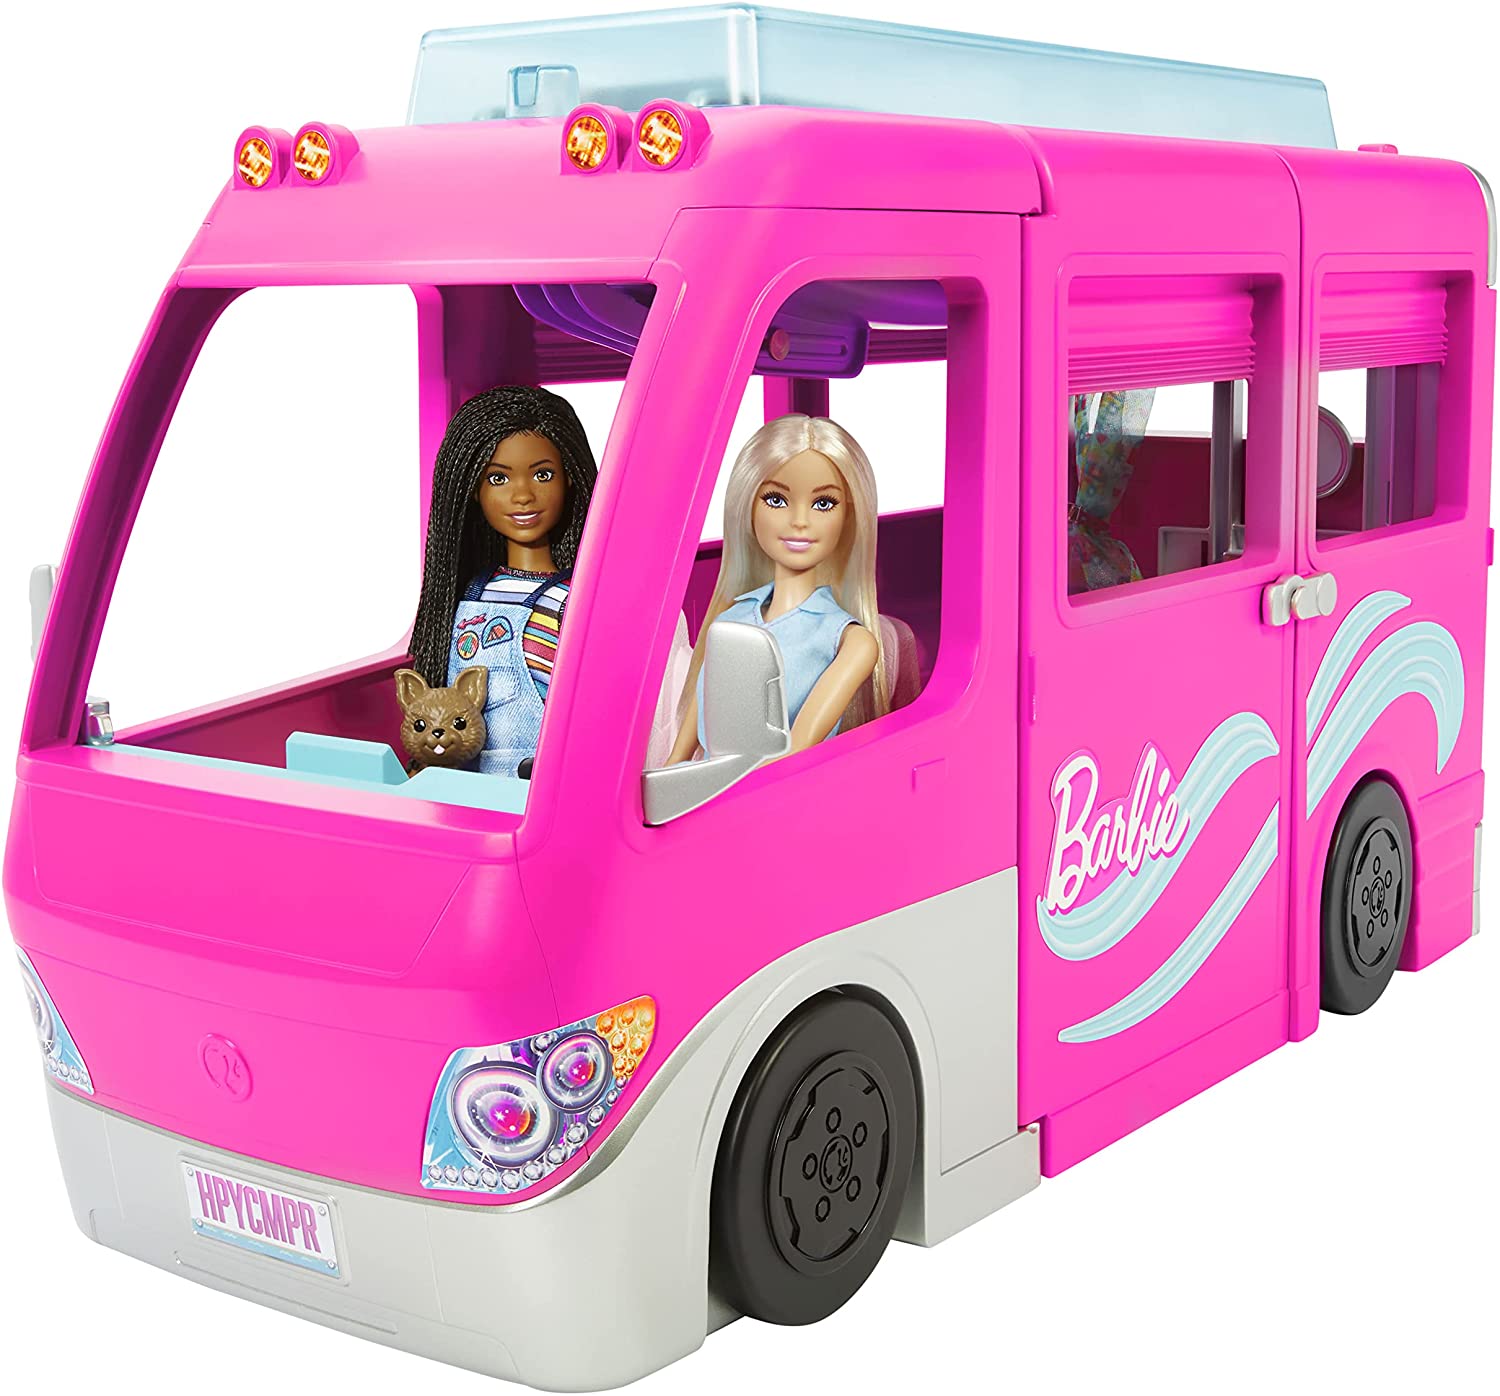 New barbie dream camper 2018  